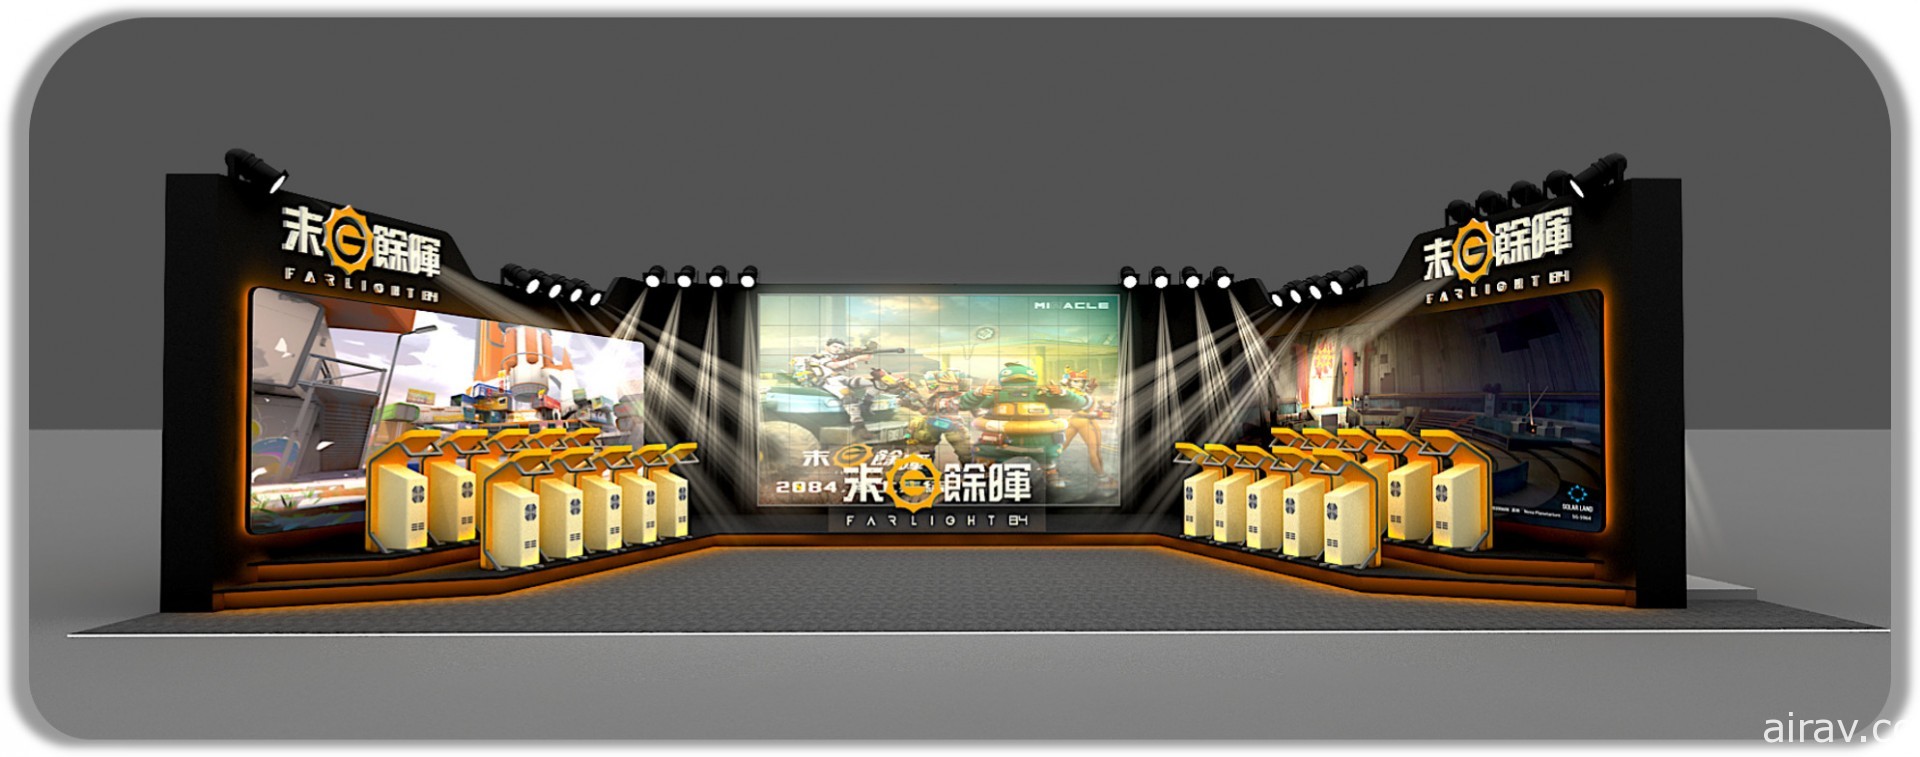 【TpGS 21】开放世界射击新作《末日余晖》将在台湾开放全球首个线下试玩